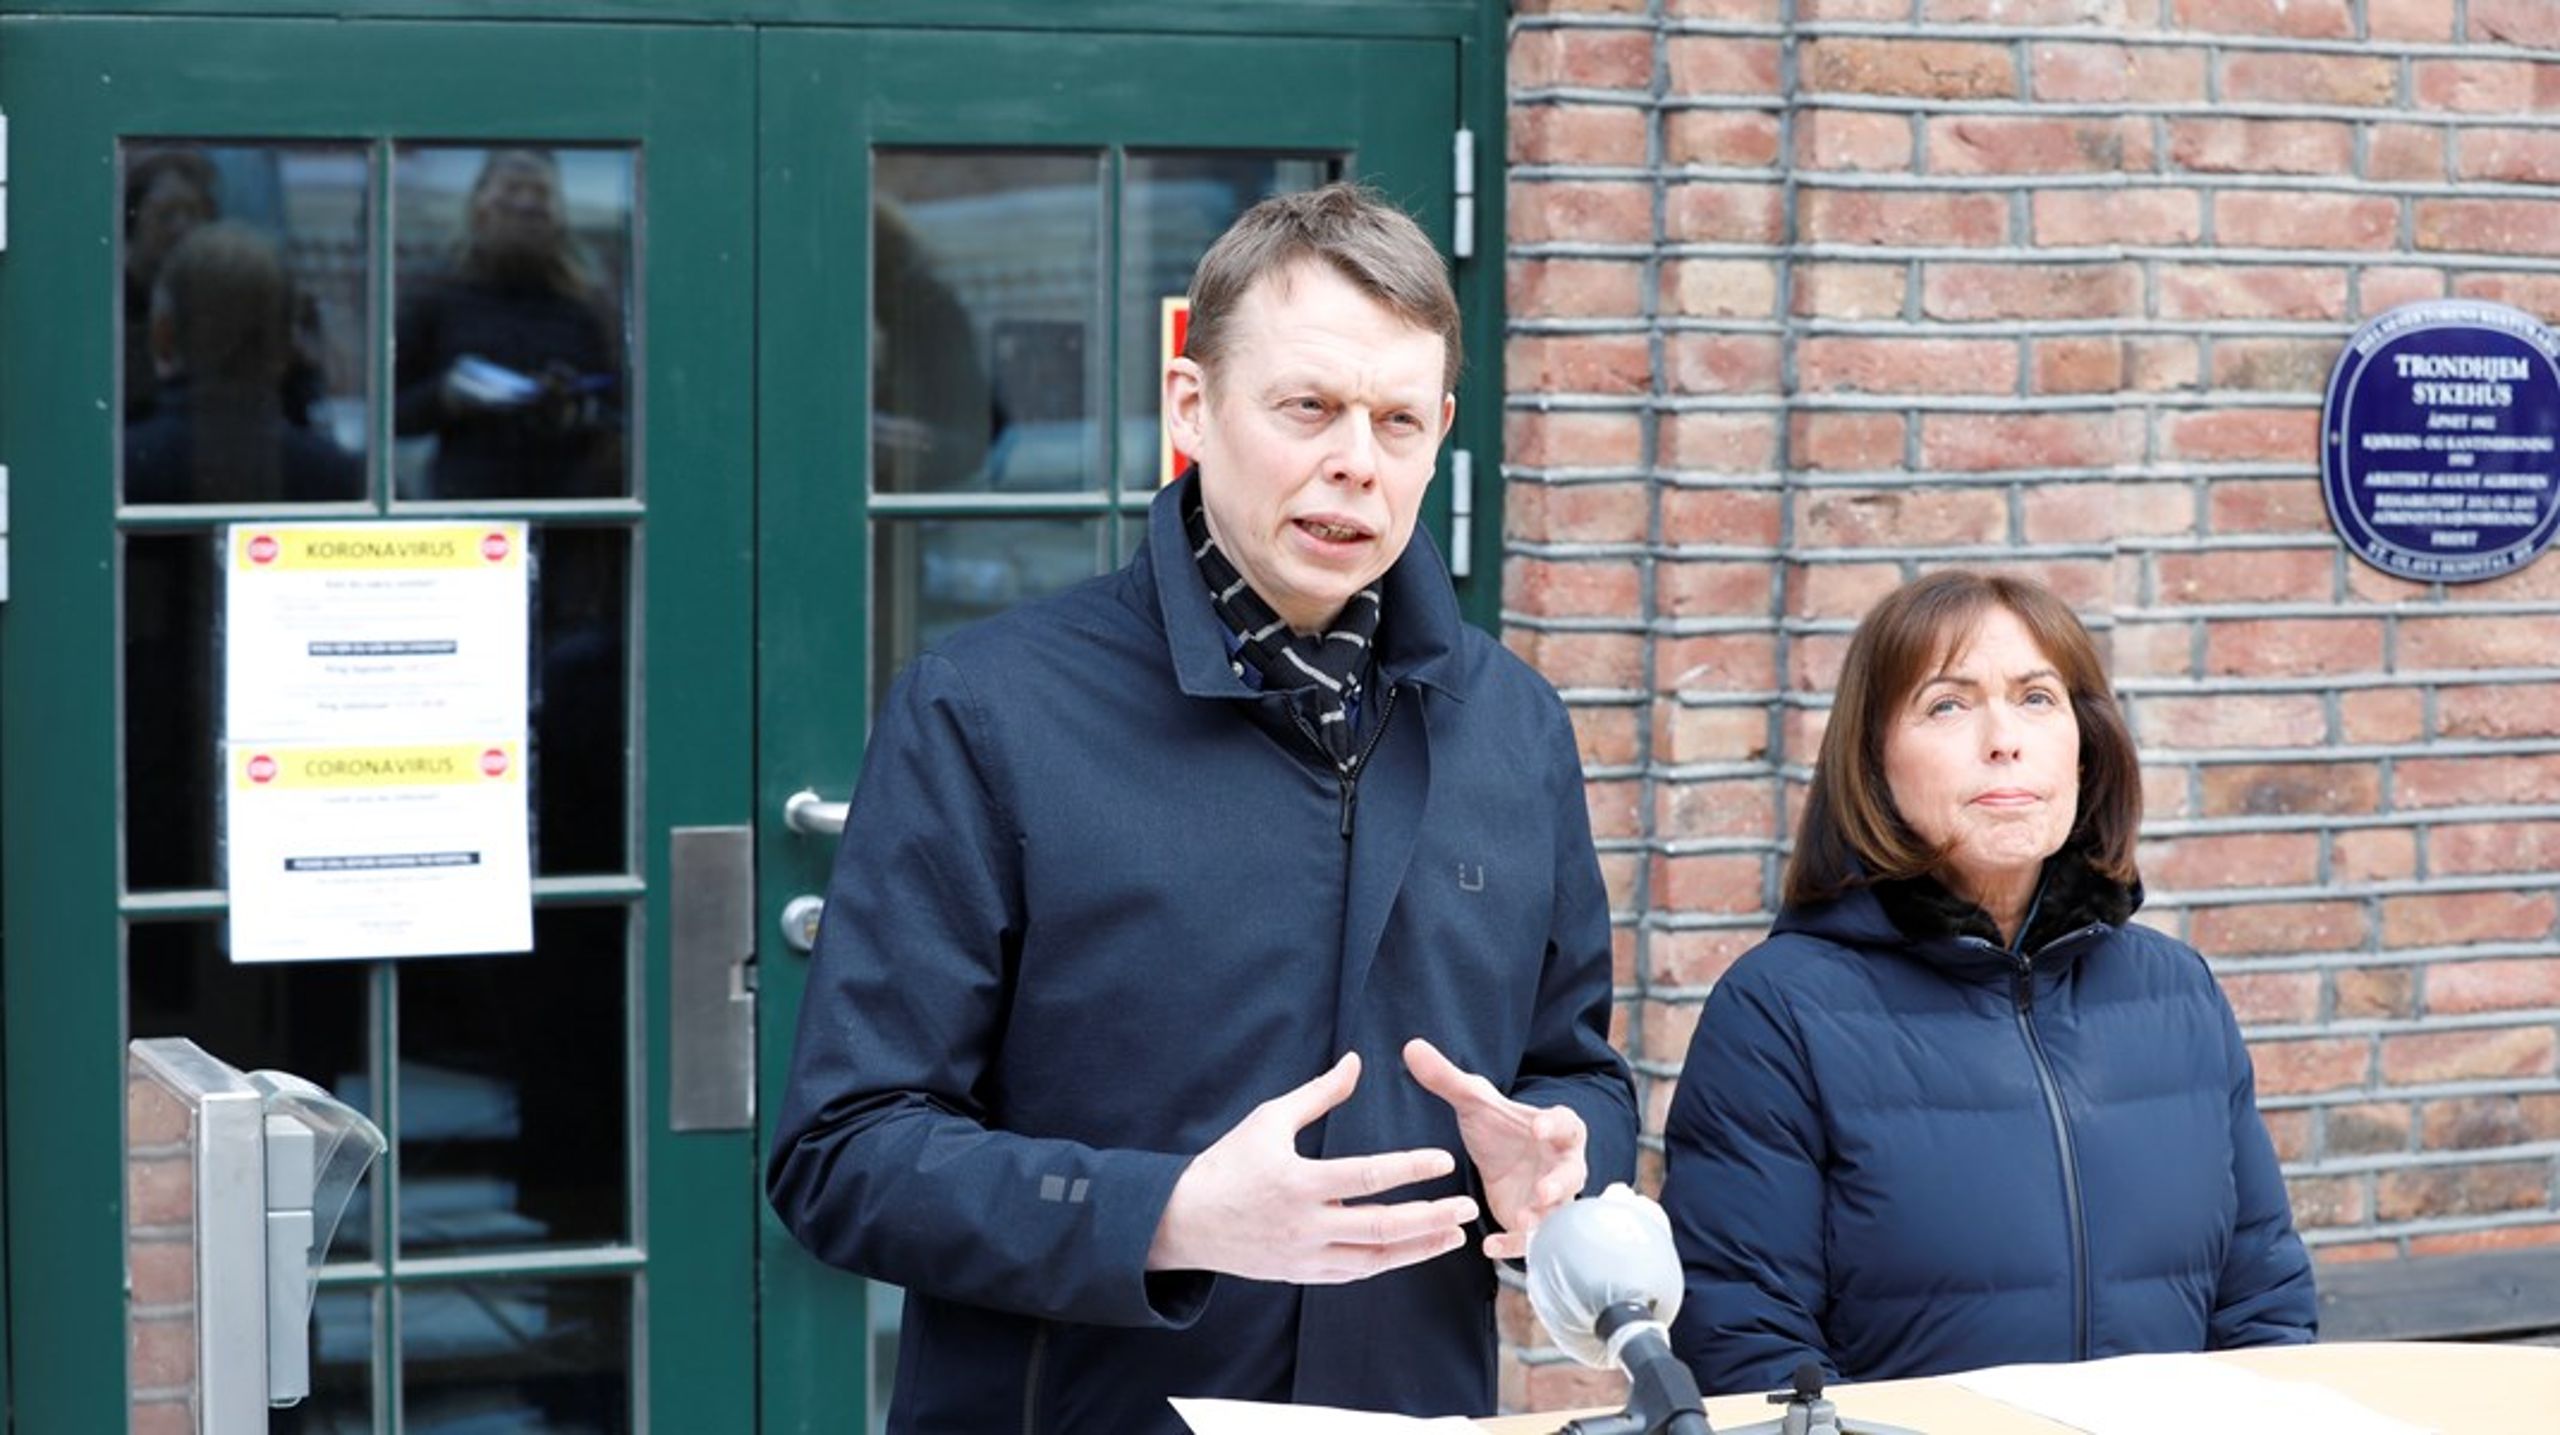 Tom Christian Martinsen overtar posten som administrerende direktør ved St. Olavs hospital etter Grethe Aasved. Bildet er fra en pressekonferanse under koronapandemien i mars 2020, da Martinsen var konstituert fagdirektør ved St. Olav.